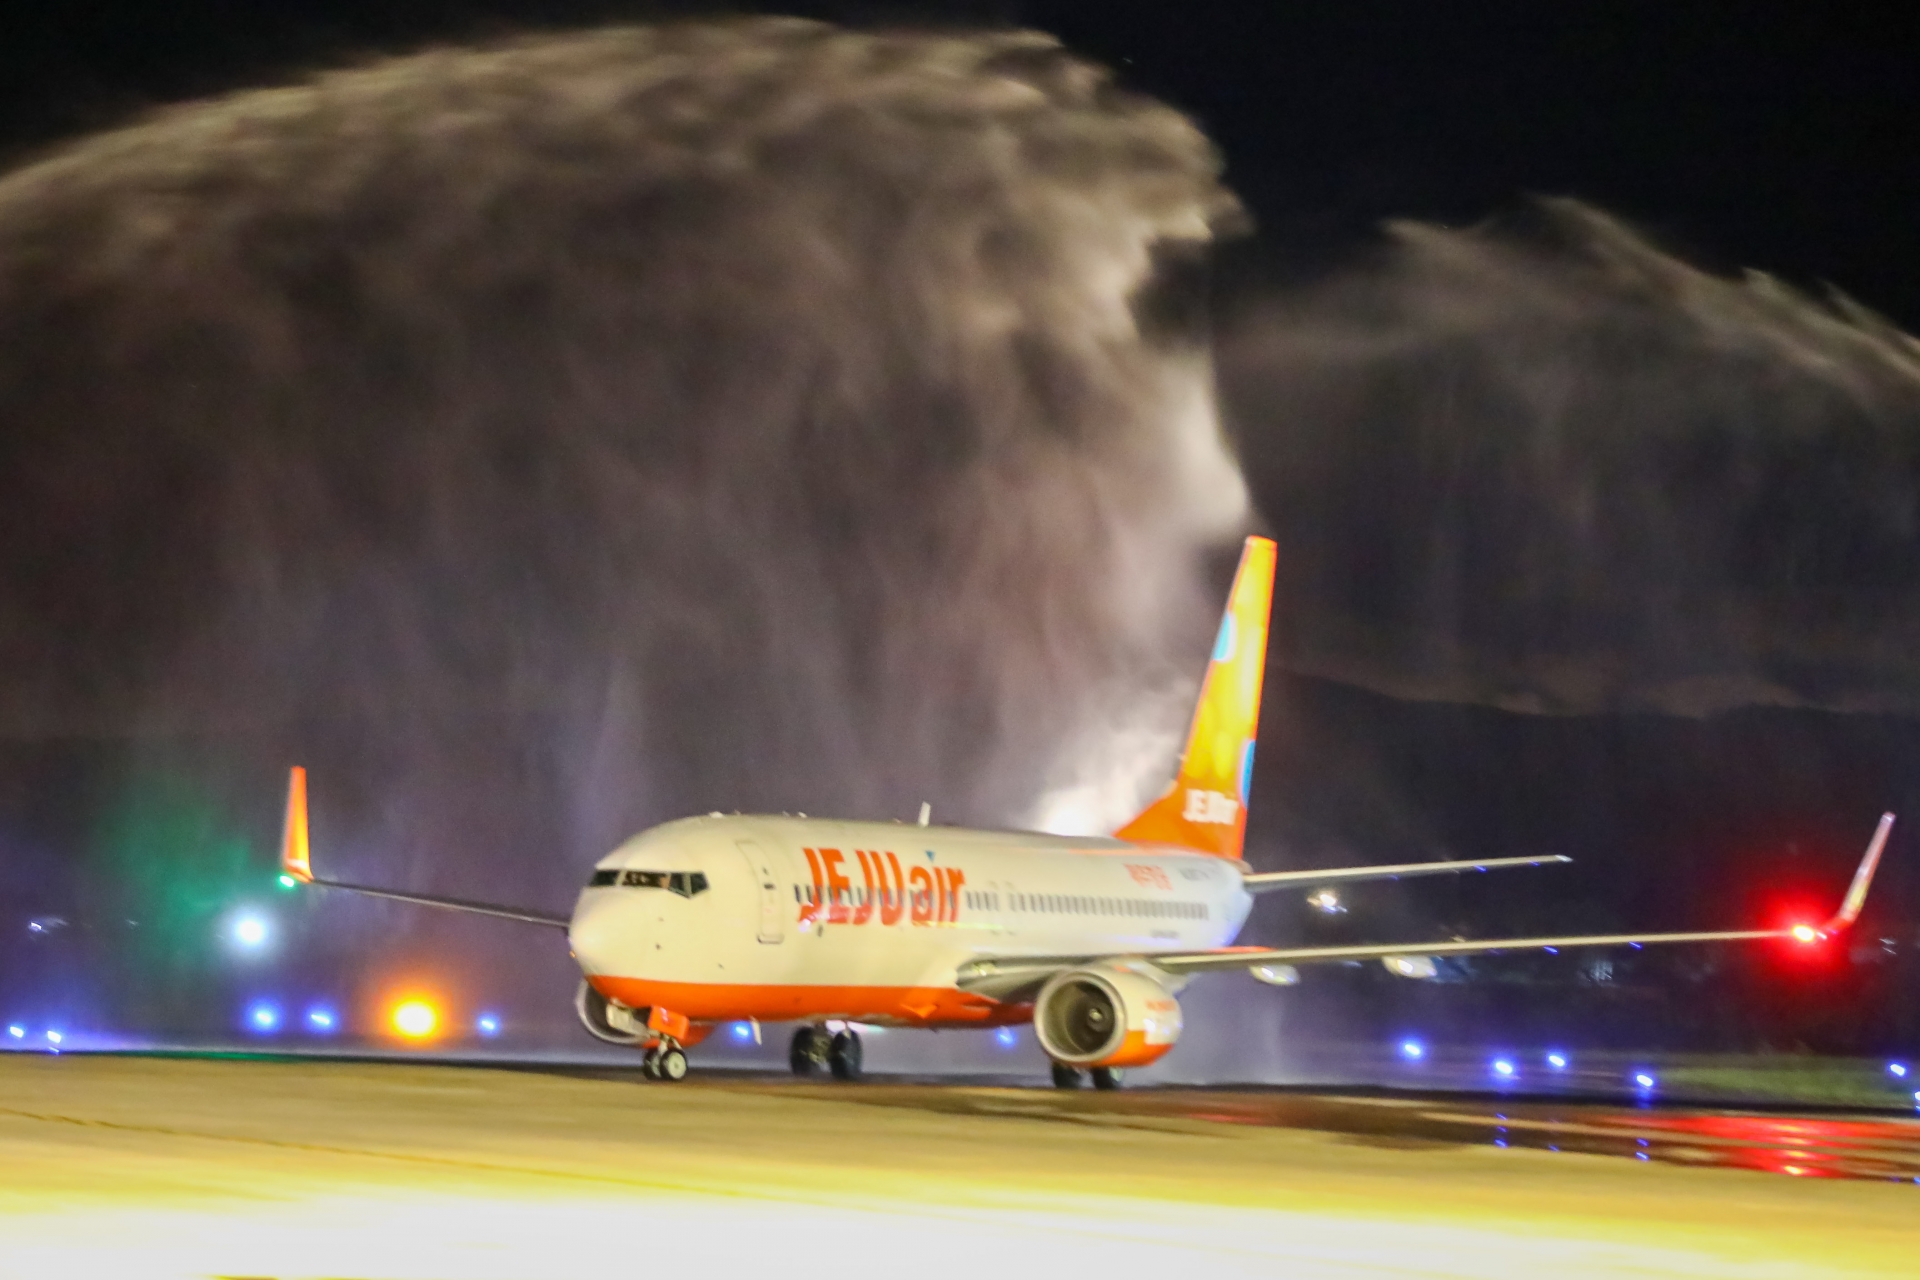 Lâm Đồng đón chuyến bay thương mại từ Incheon đến Liên Khương của hãng hàng không JeJu Air